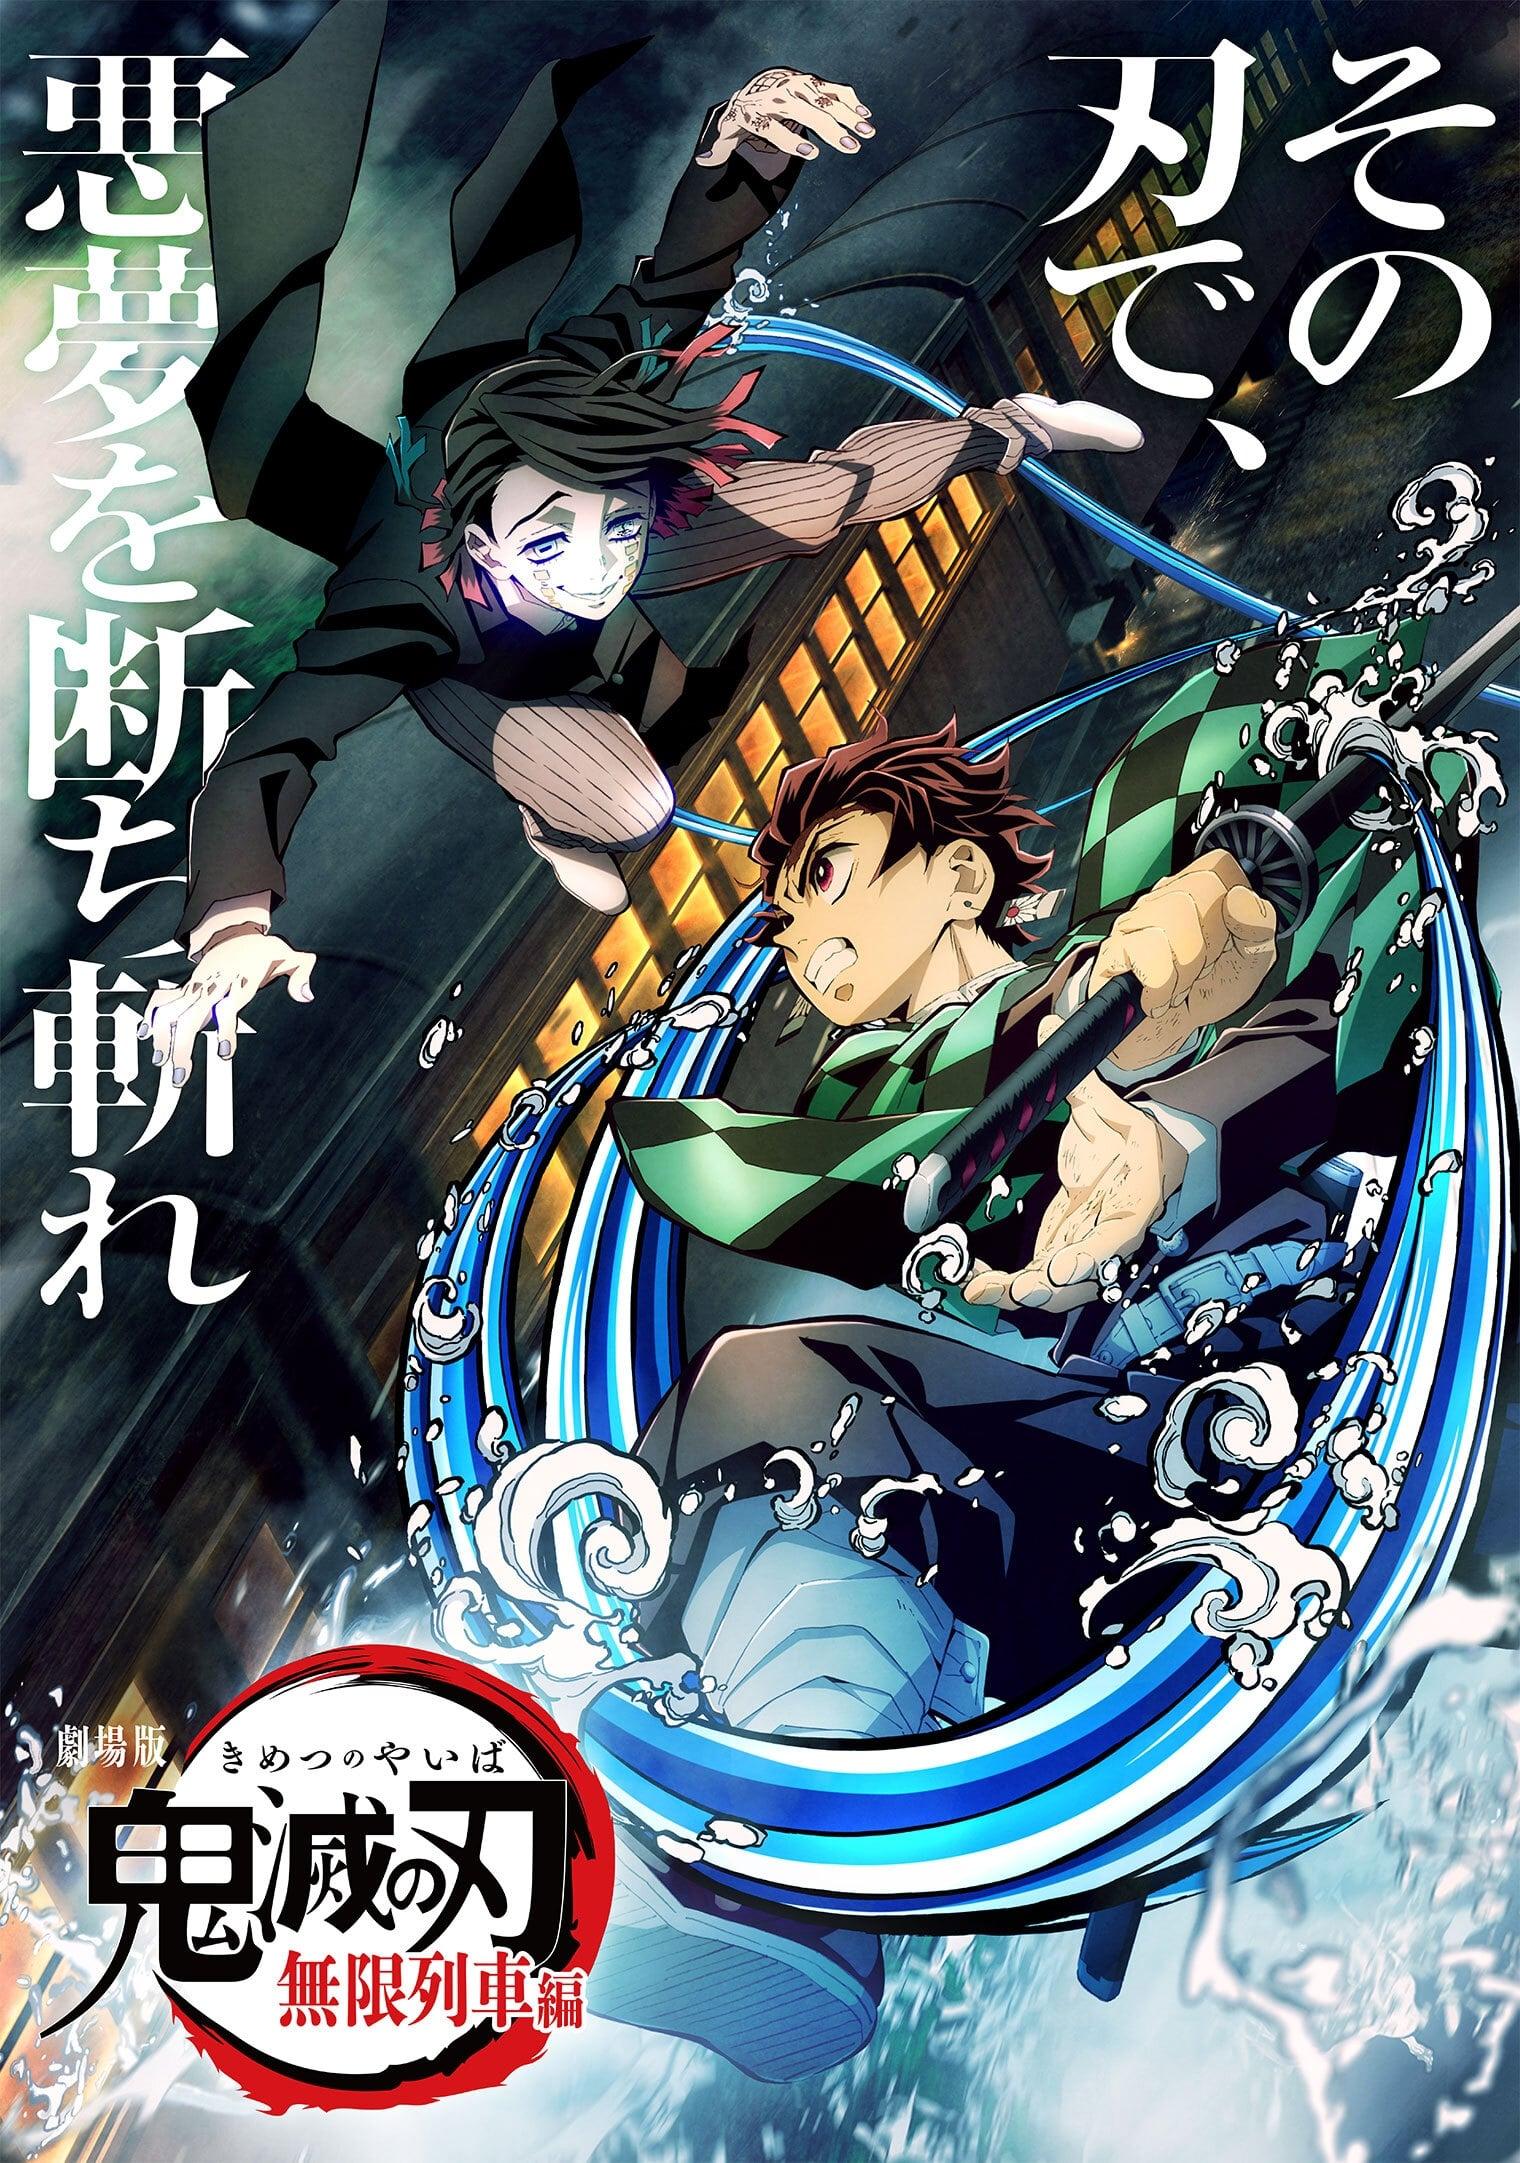 Demon Slayer: Kimetsu no Yaiba - Mugen Train poster